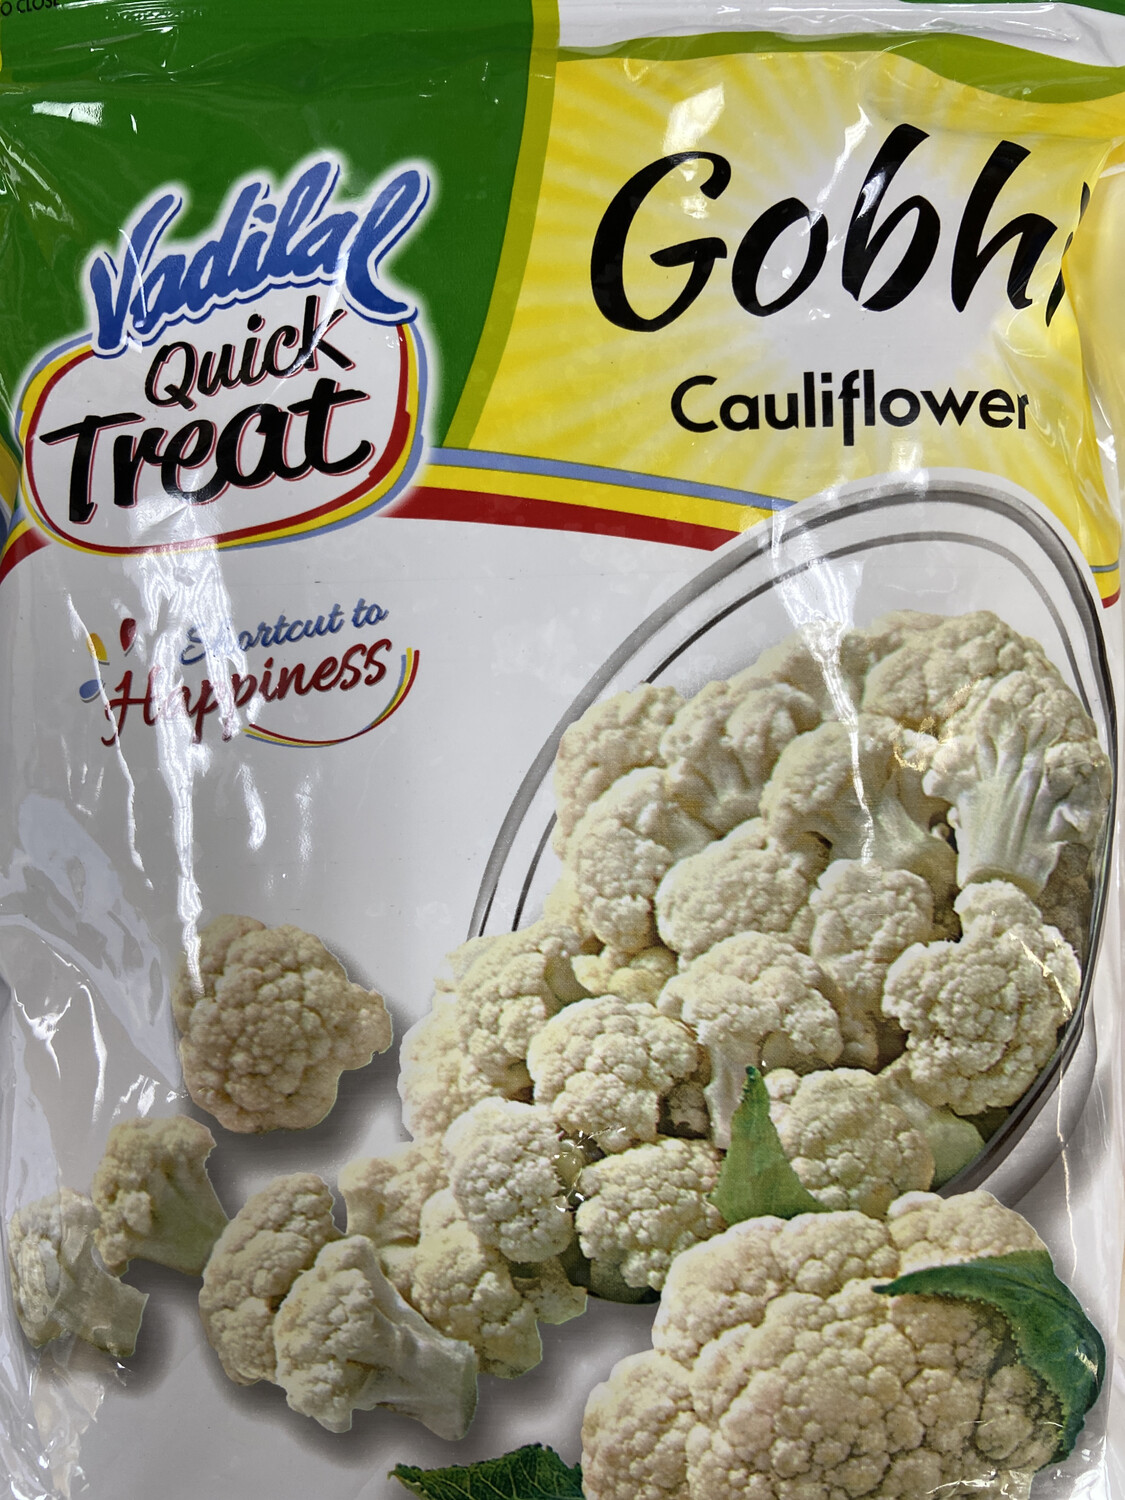 Vadilal Gobhi Cauliflower Frz 312g